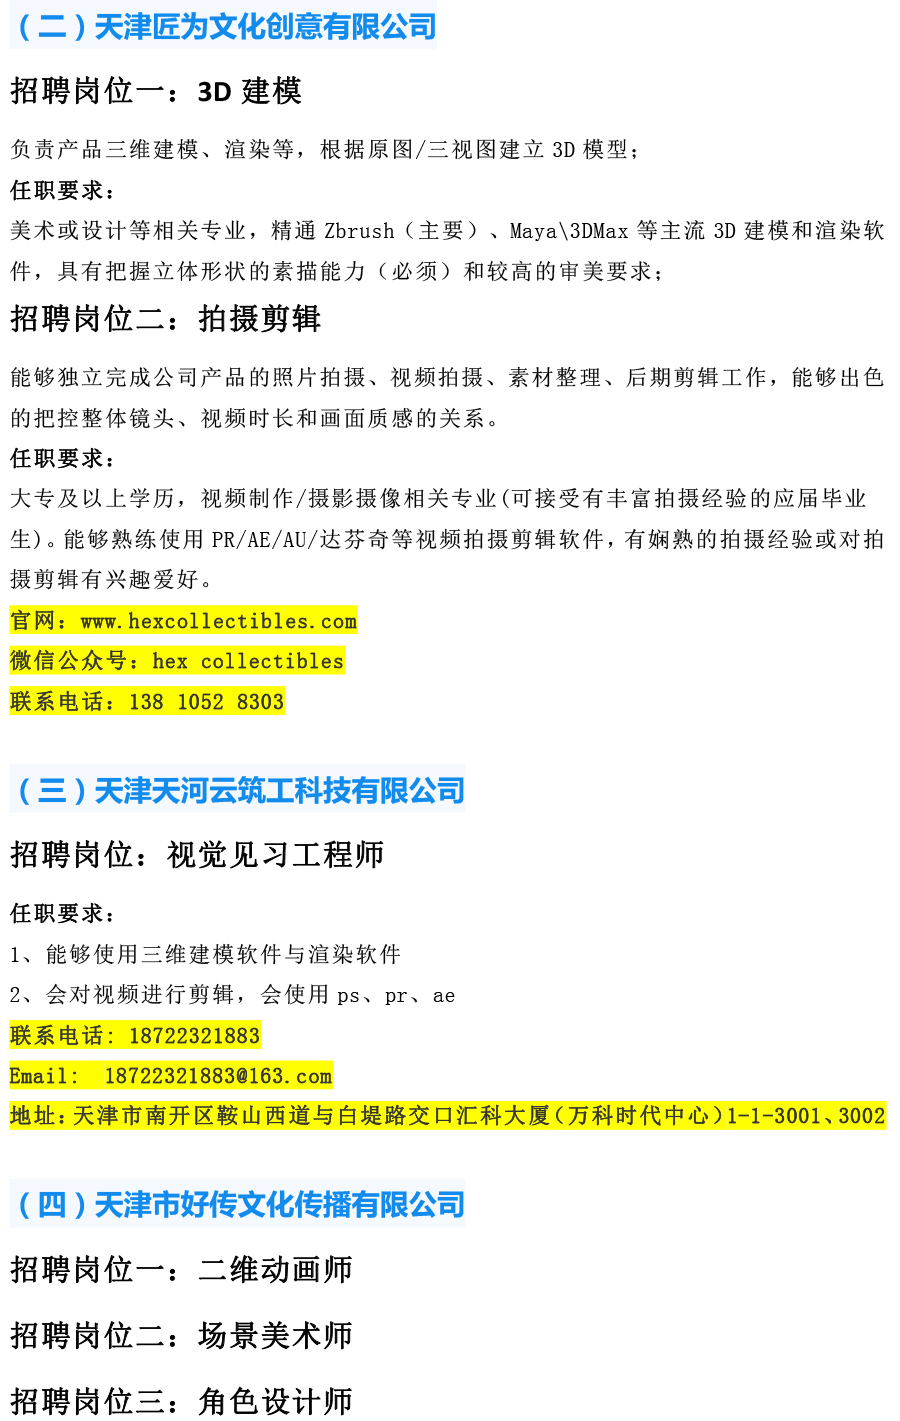 天津工艺美术职业学院2021年12月招聘信息-2.jpg